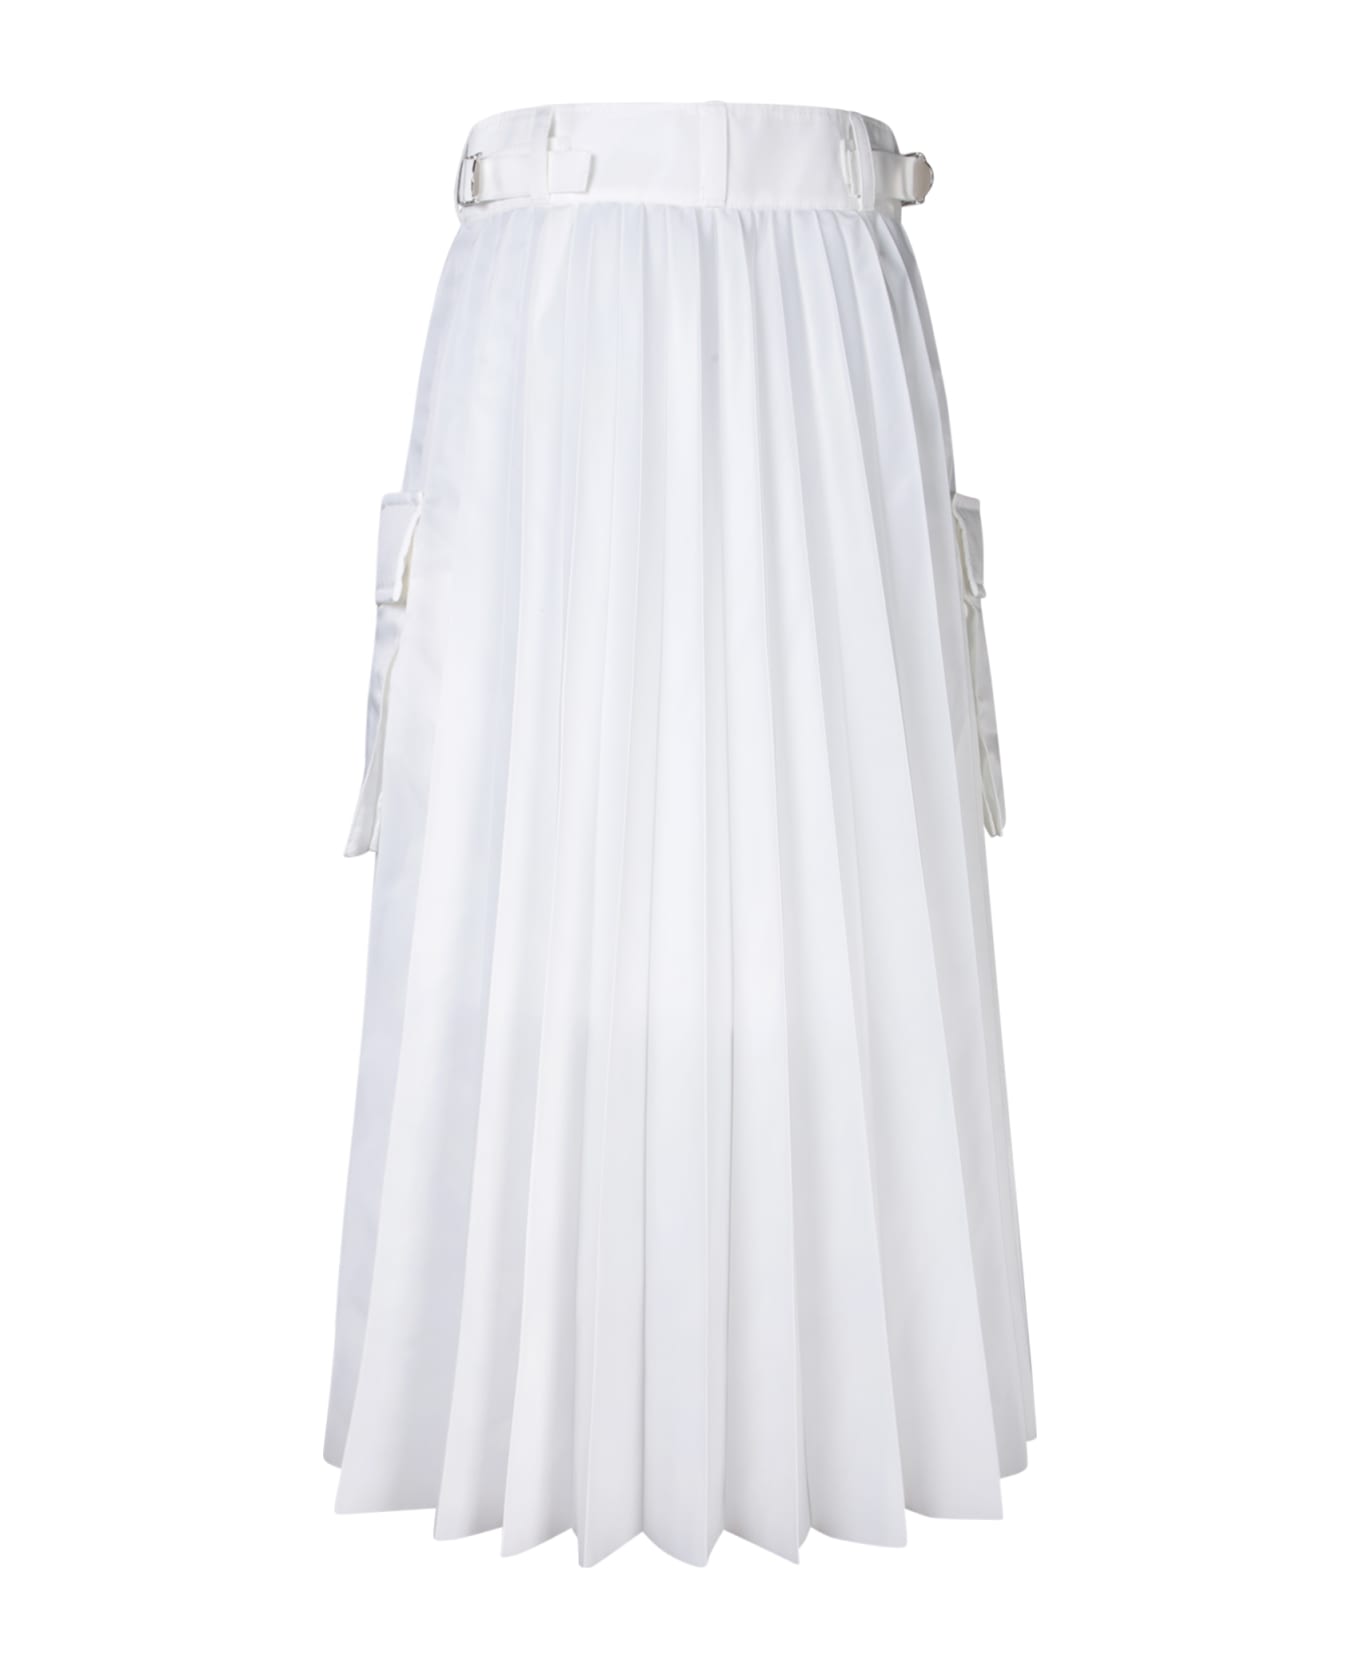 Sacai White Nylon Twill Skirt - White